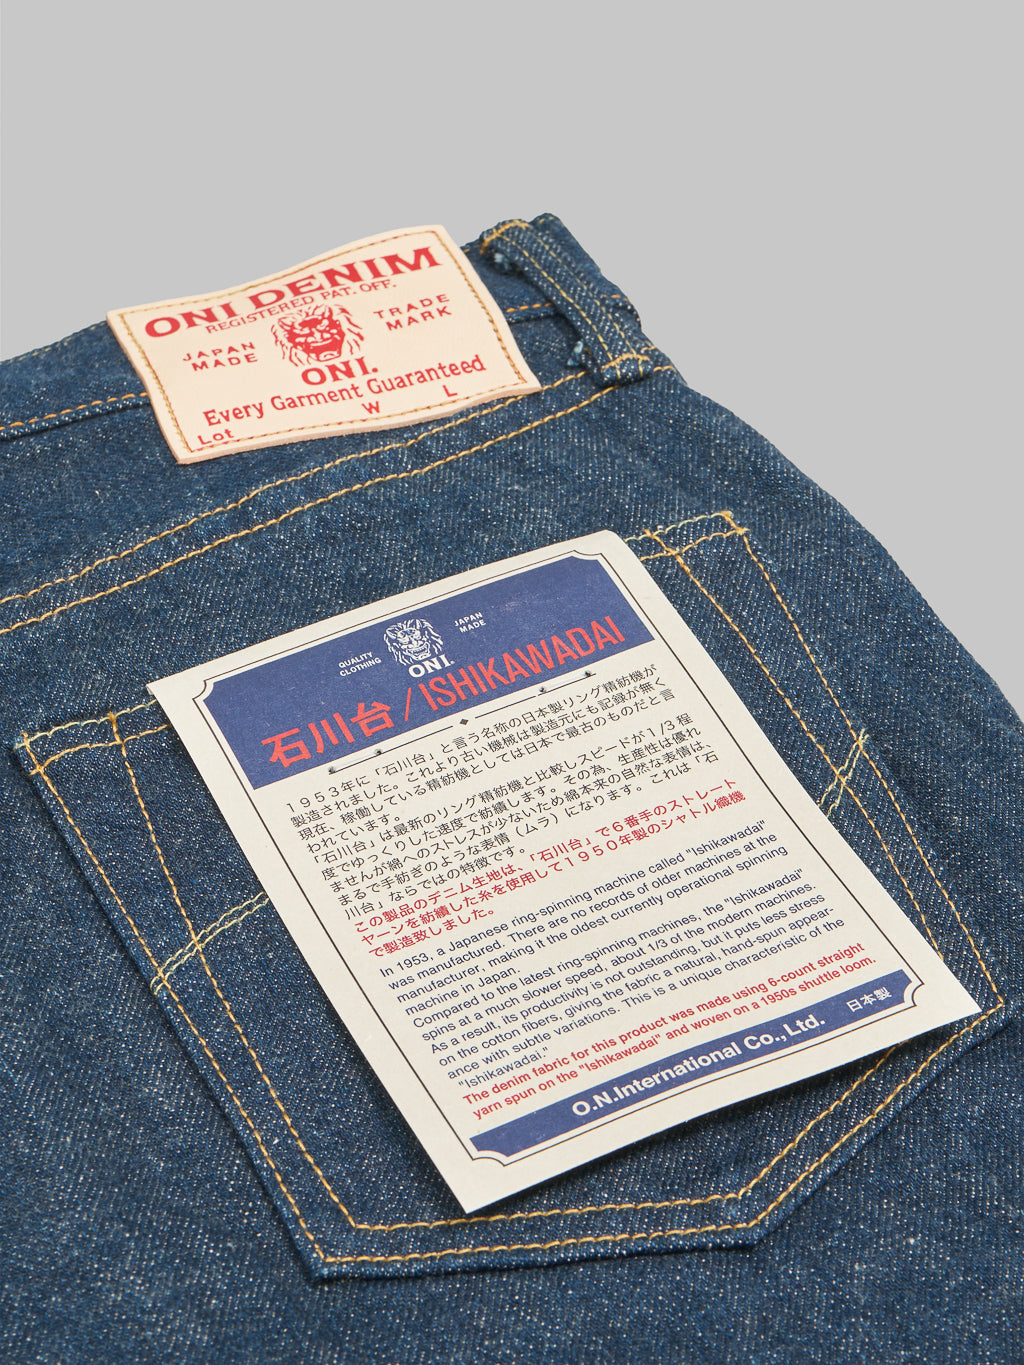 ONI Denim 622 "Ishikawadai" 15oz Relaxed Tapered Jeans